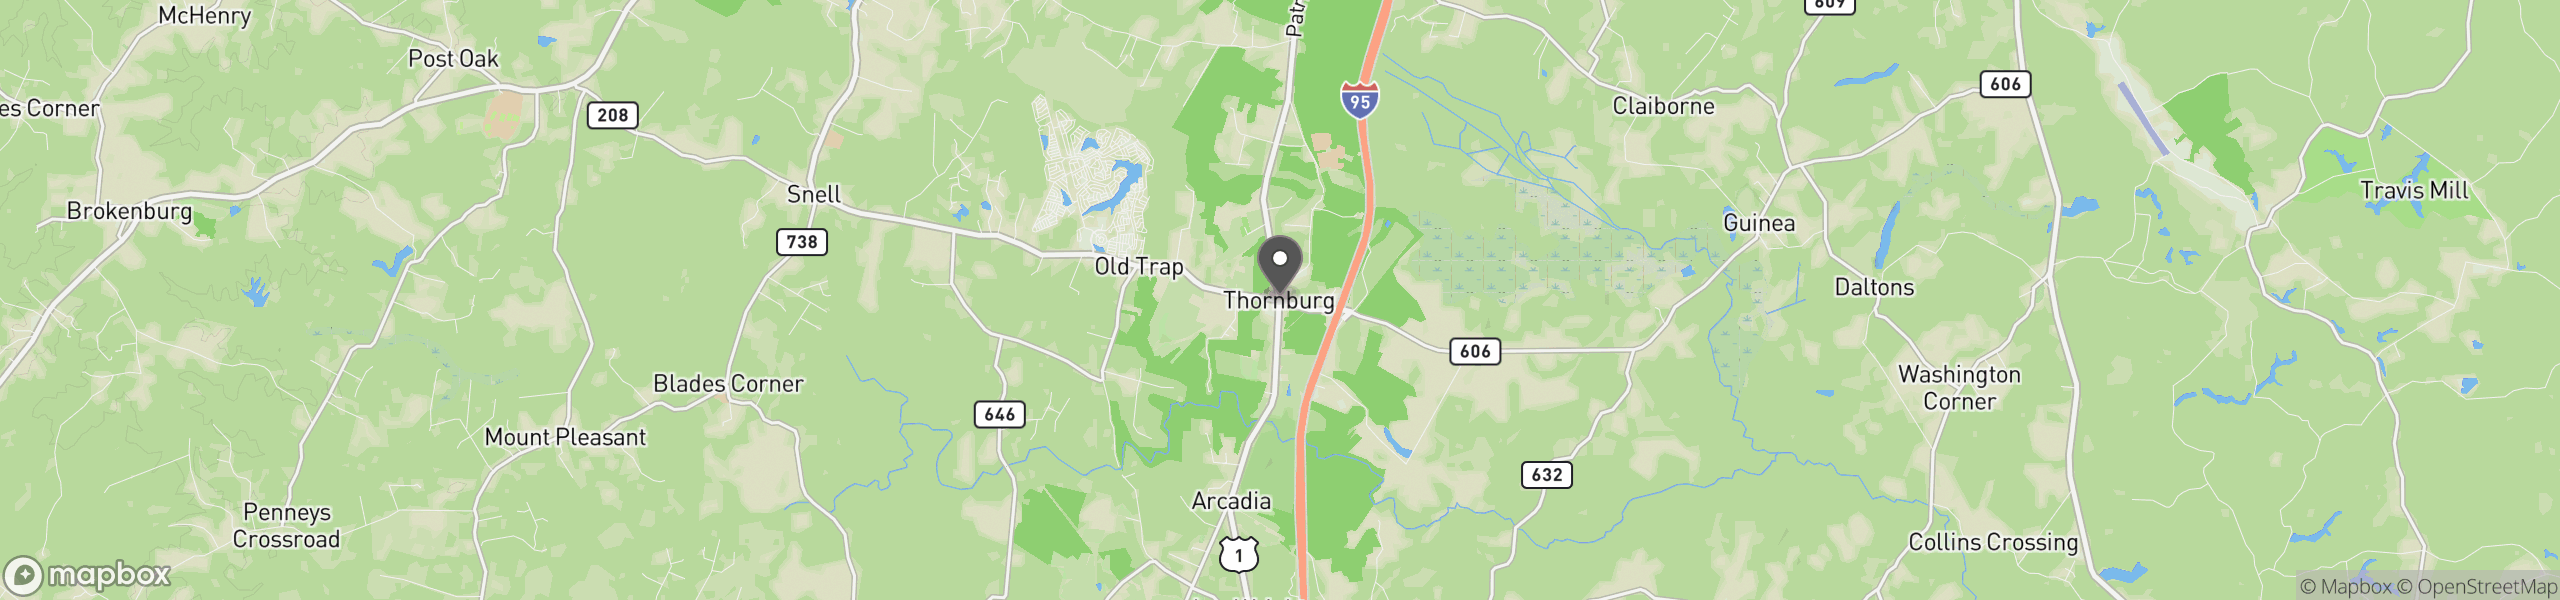 Thornburg, VA 22565